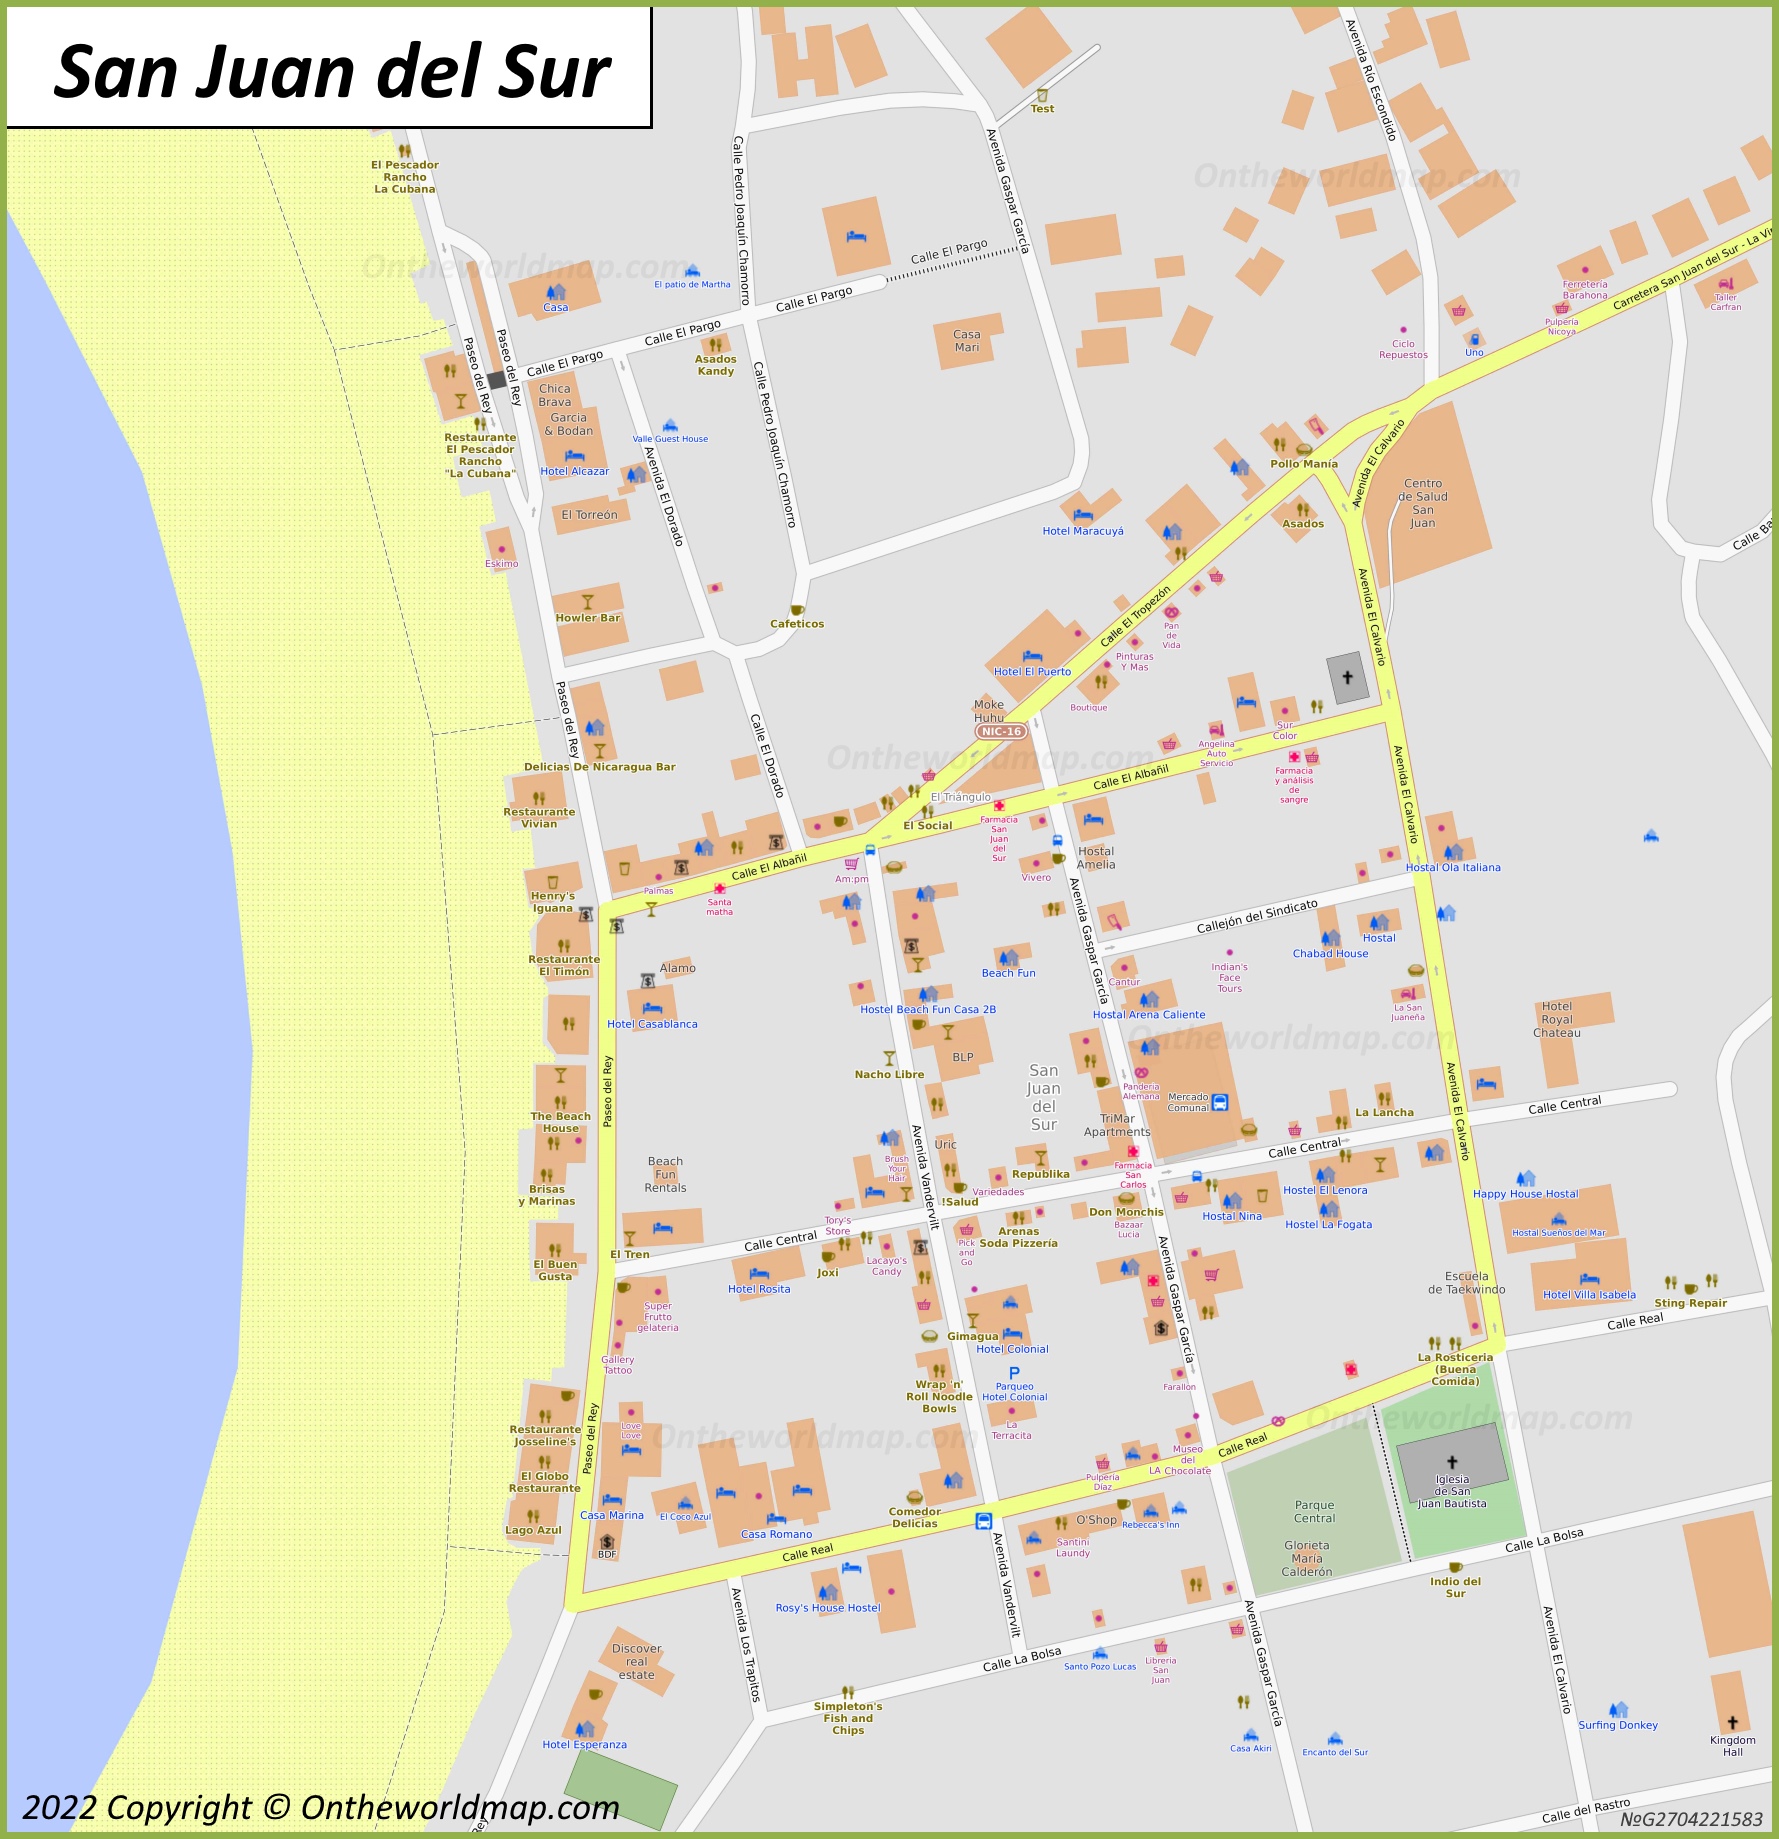 San Juan del Sur Town Centre Map